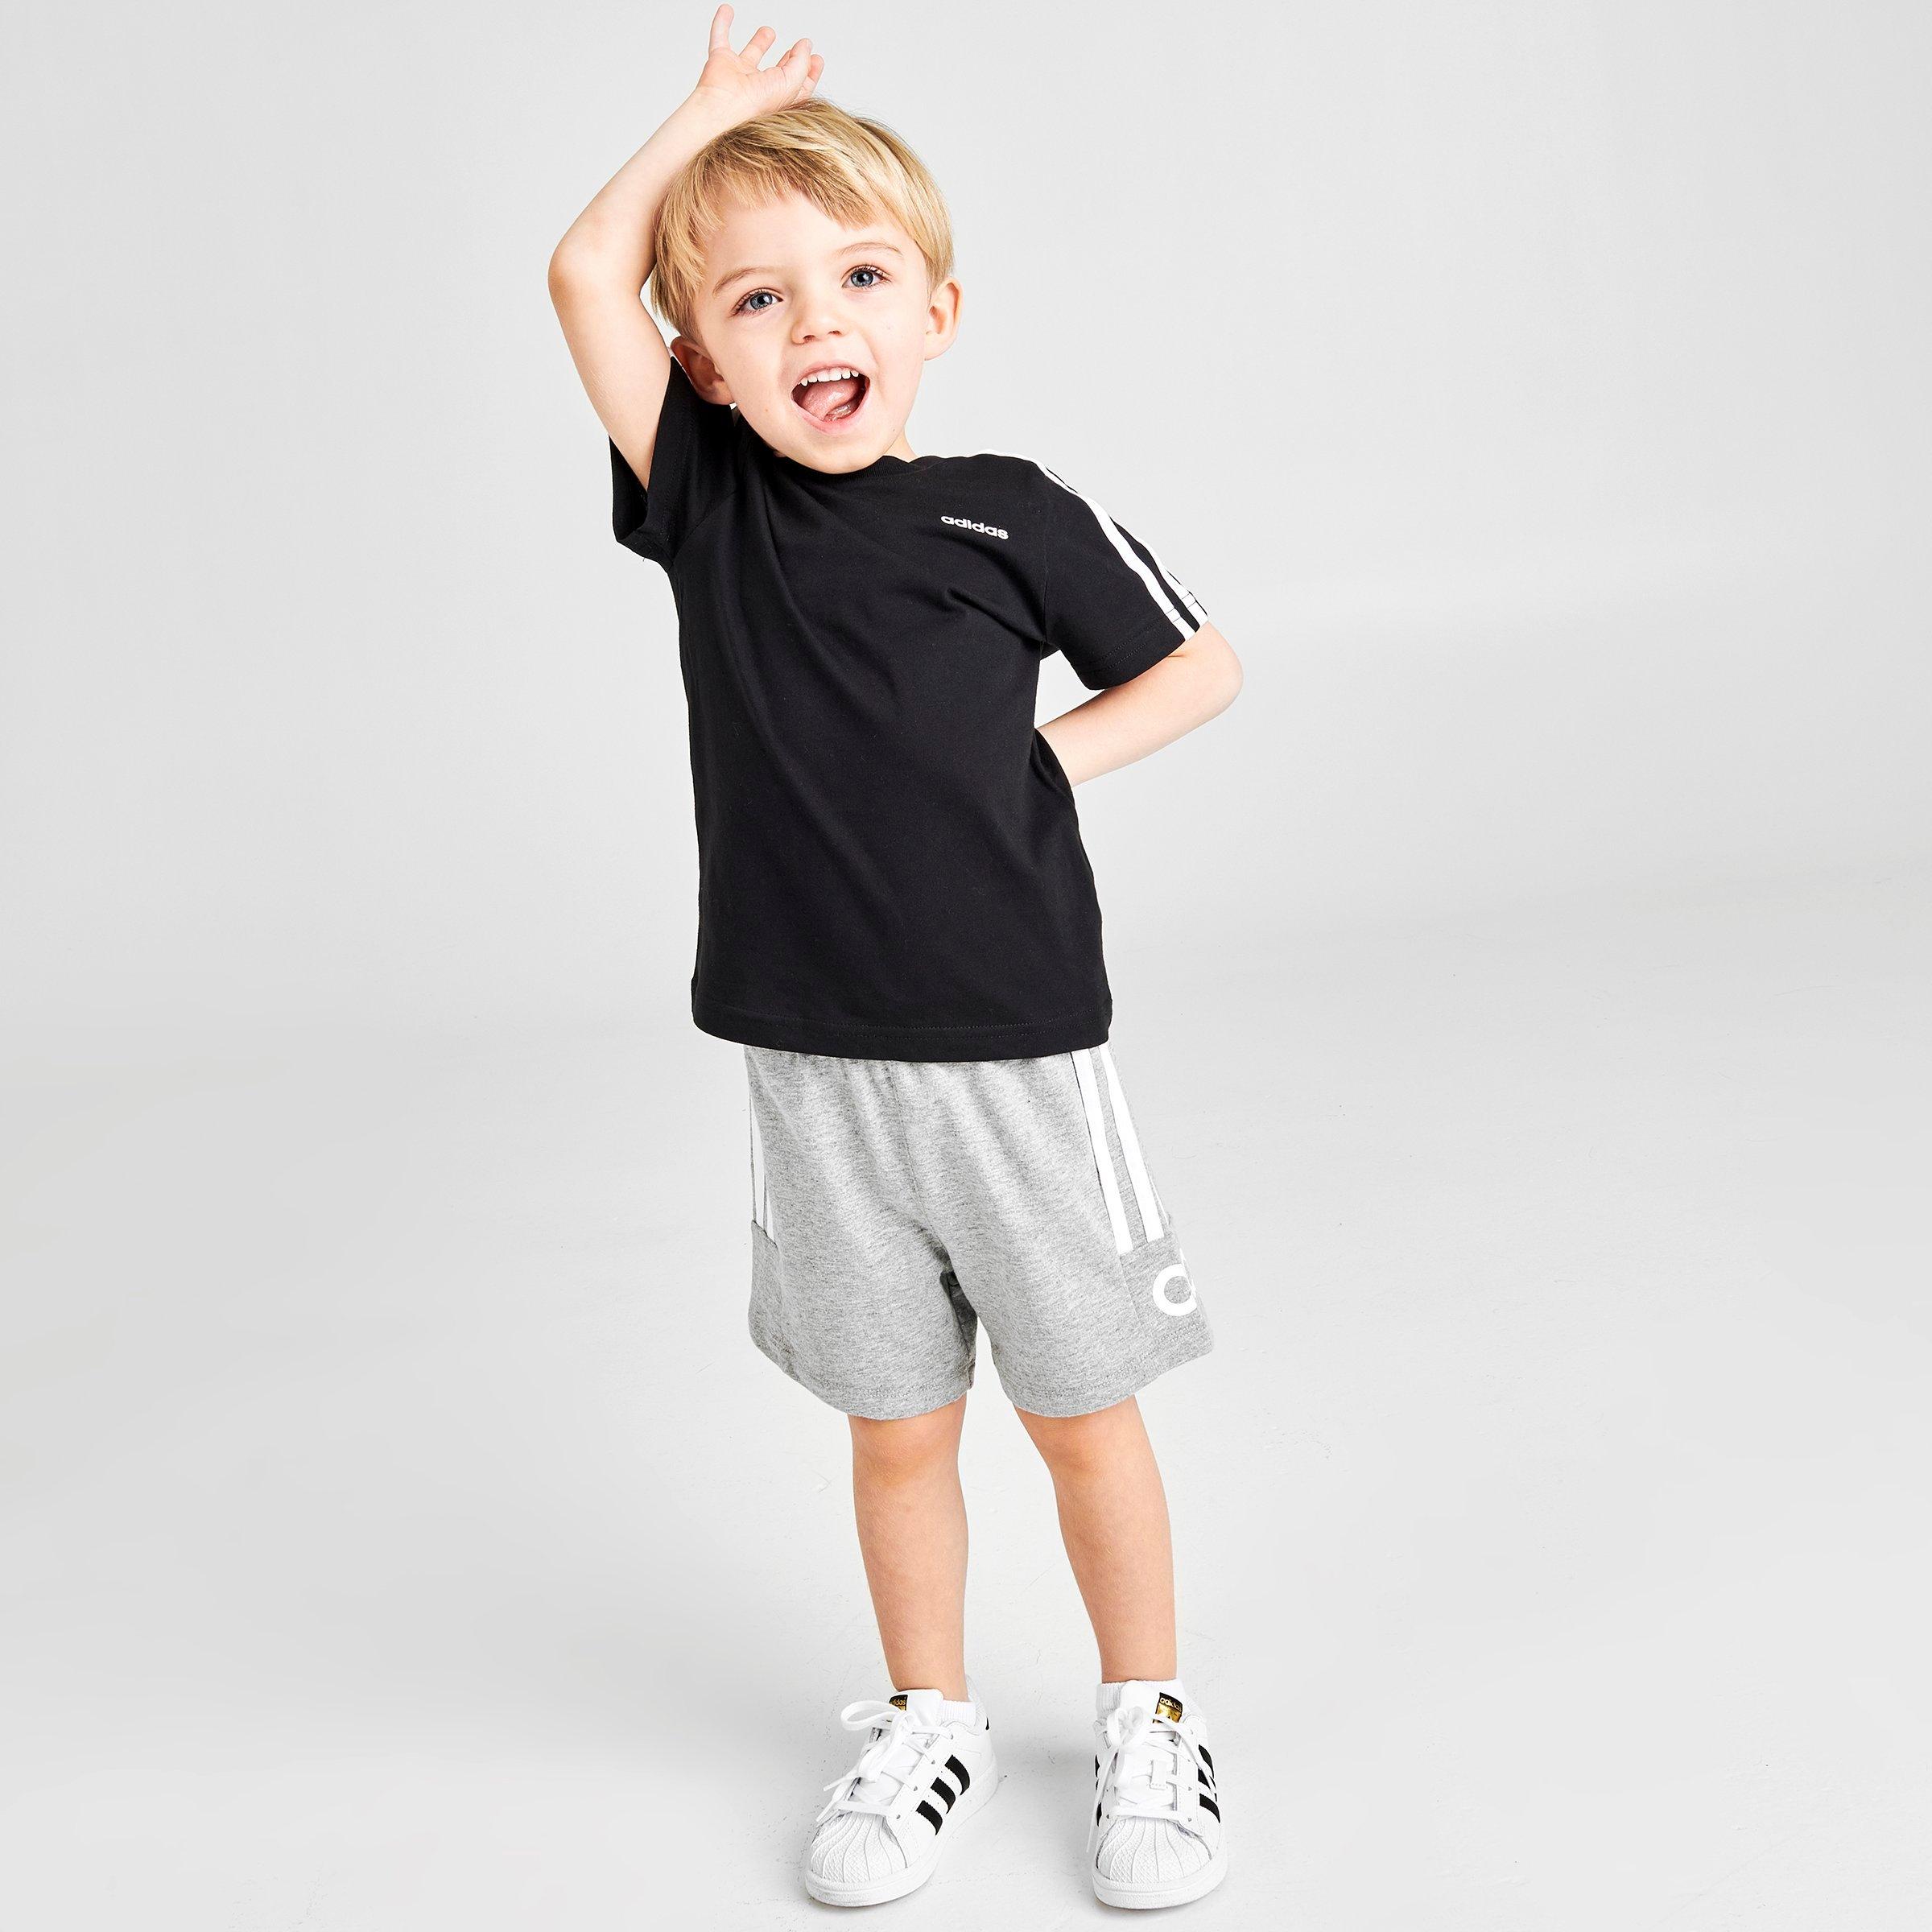 adidas toddler boy set